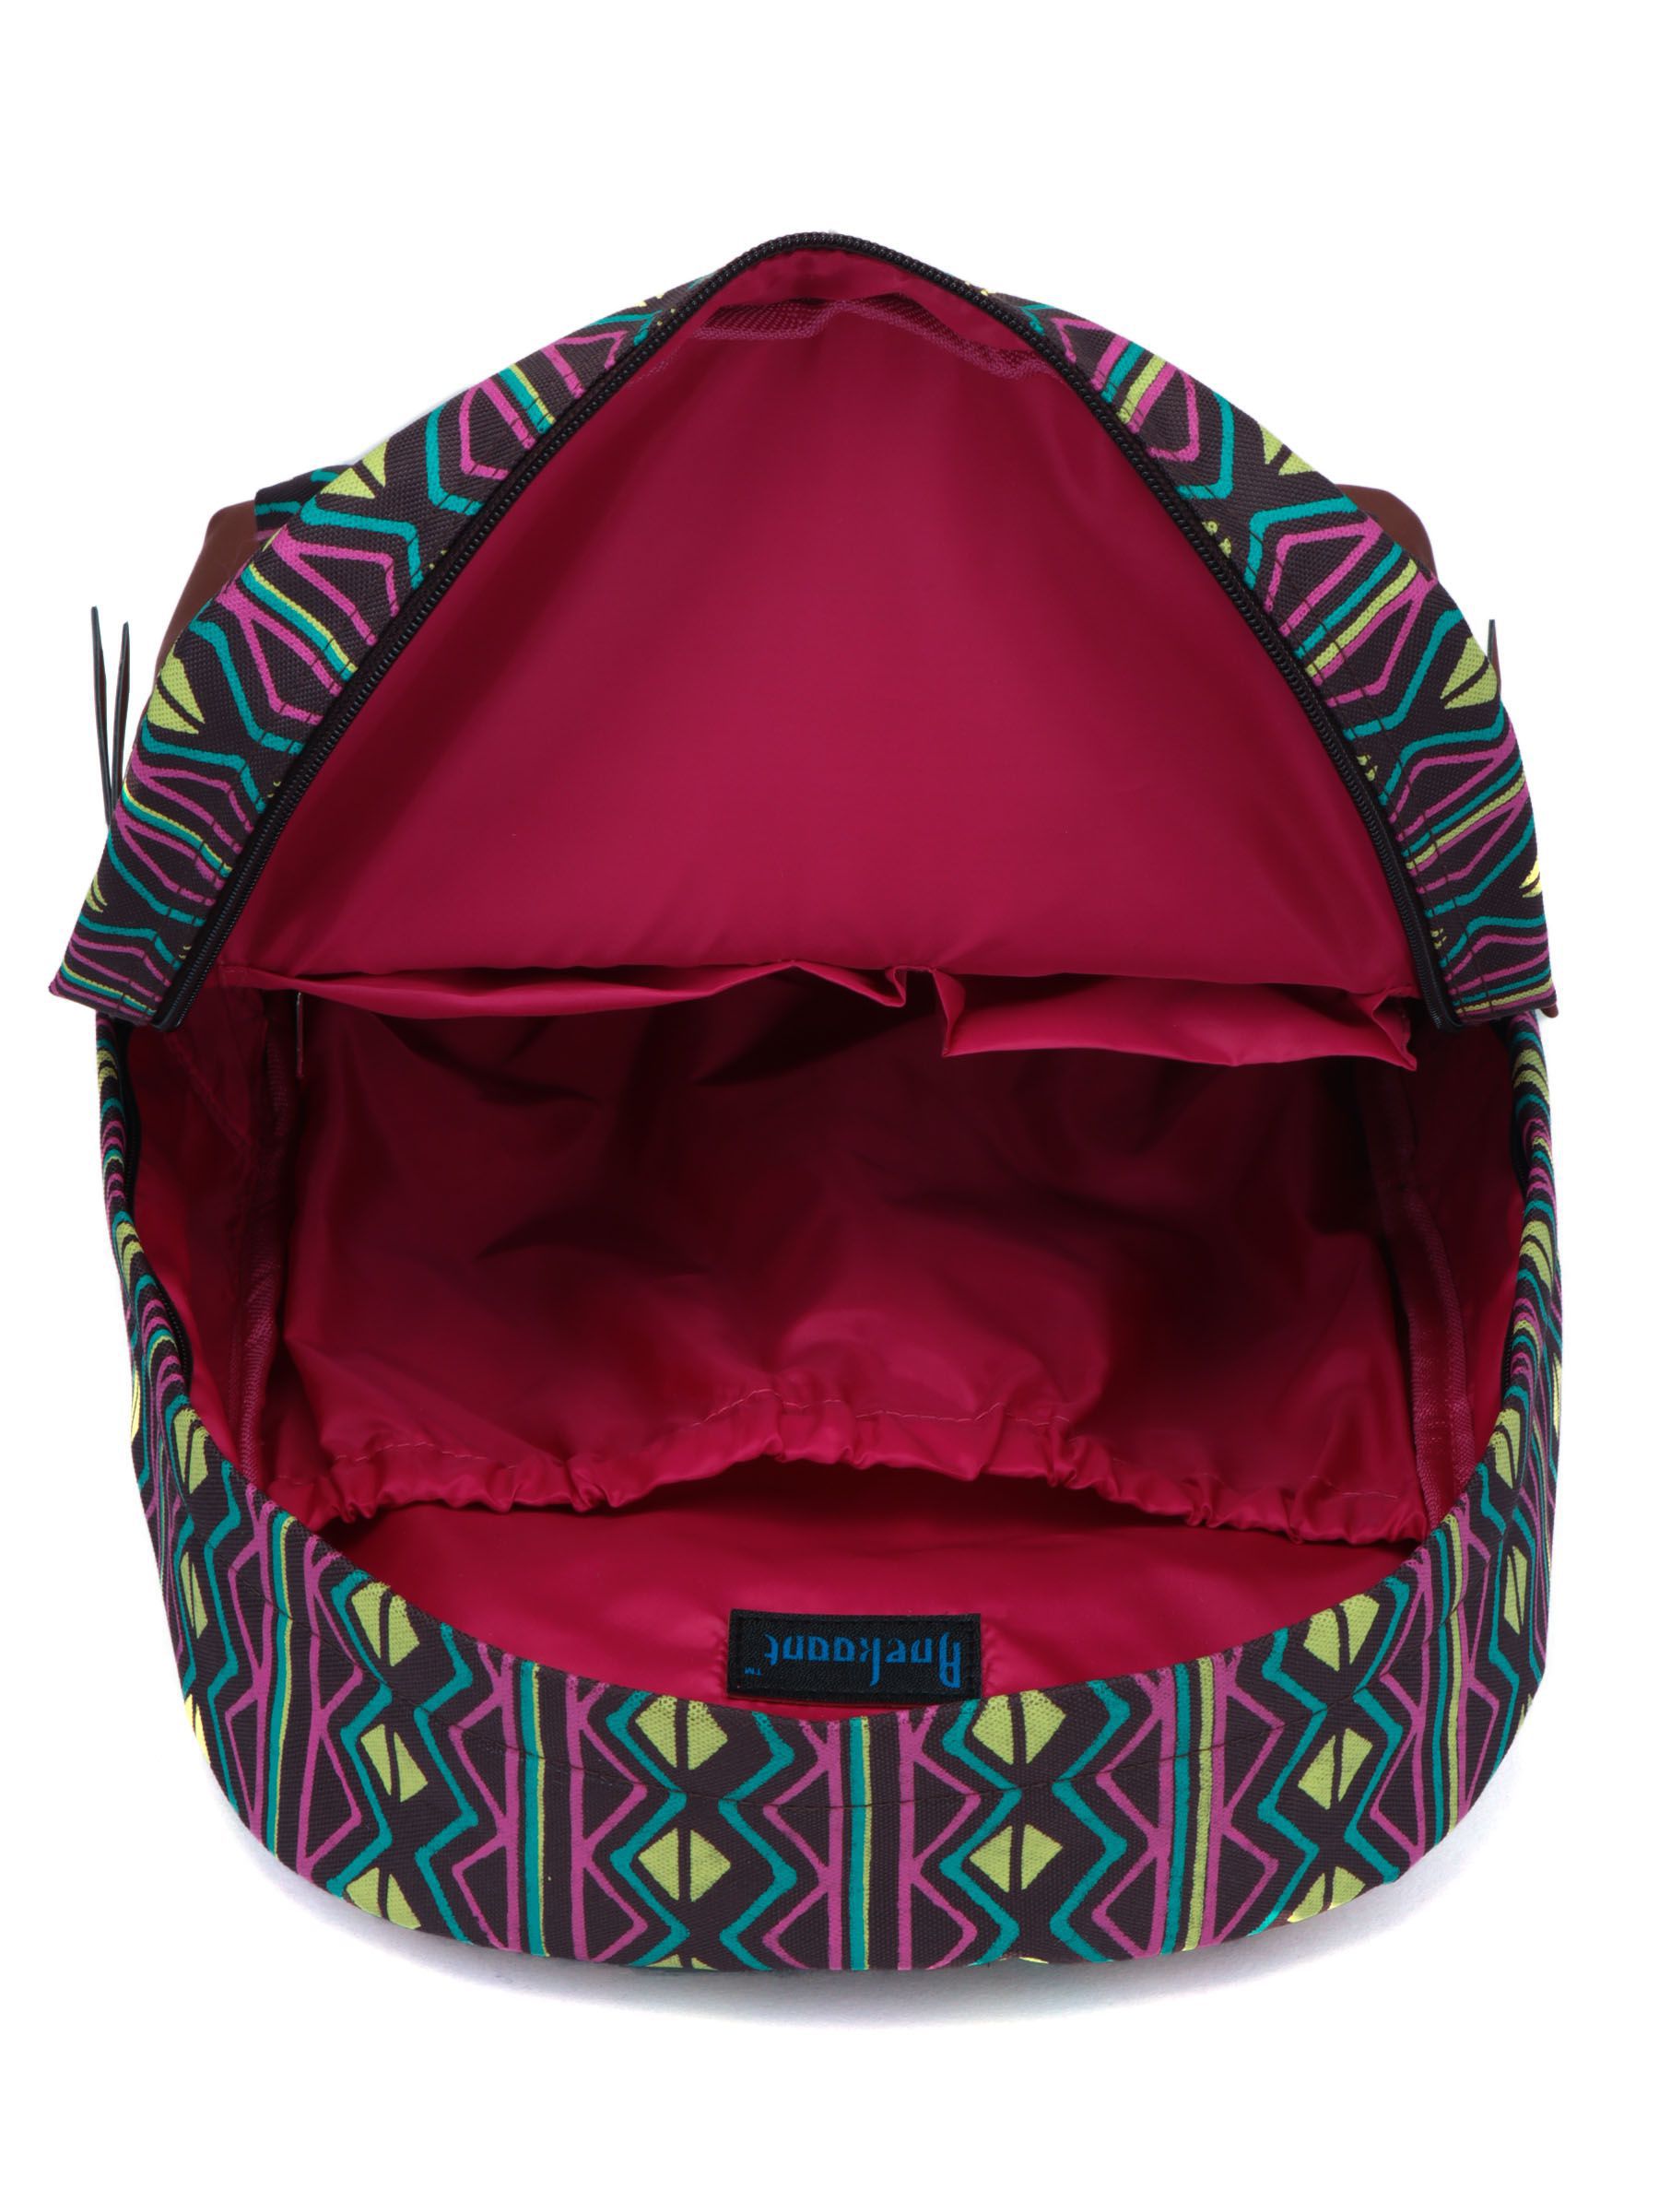 Anekaant Multicolor Artsy Backpack - Buy Anekaant Multicolor Artsy ...